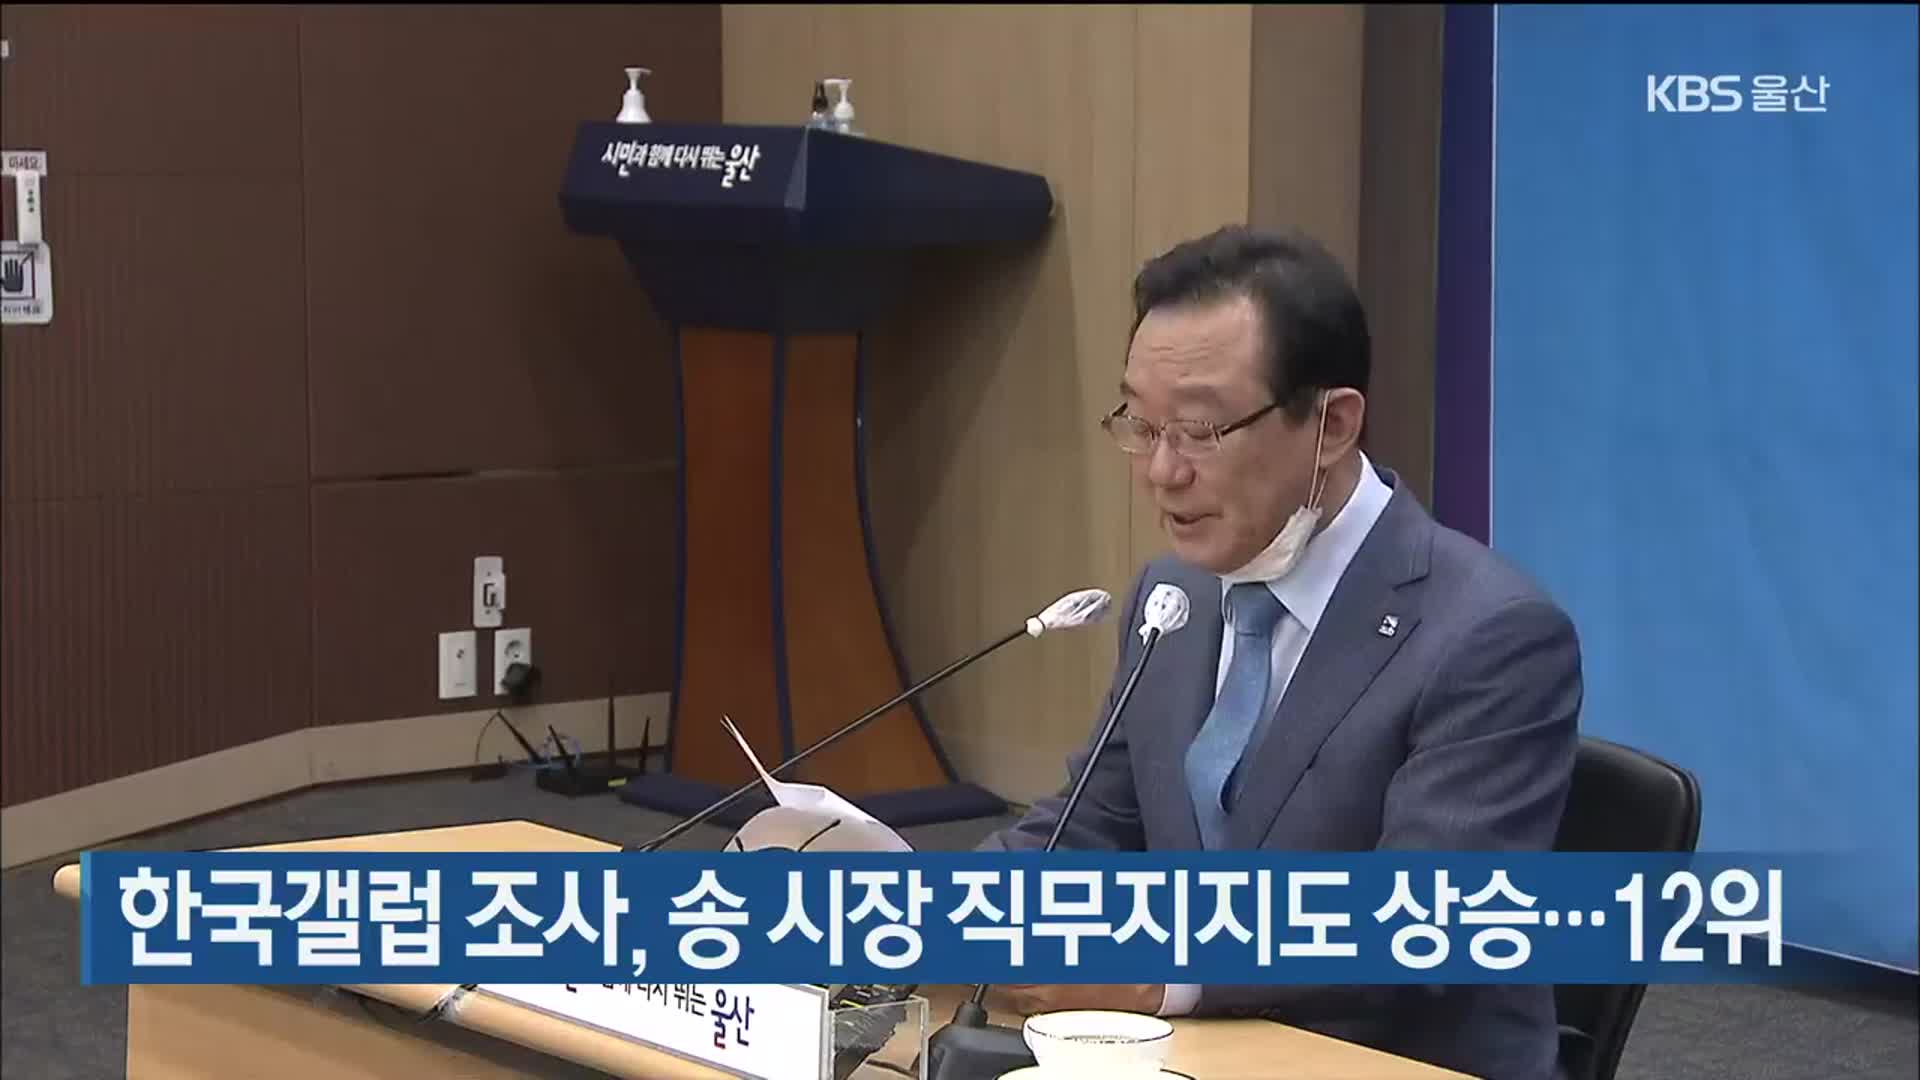 한국갤럽 조사, 송 시장 직무지지도 상승…12위